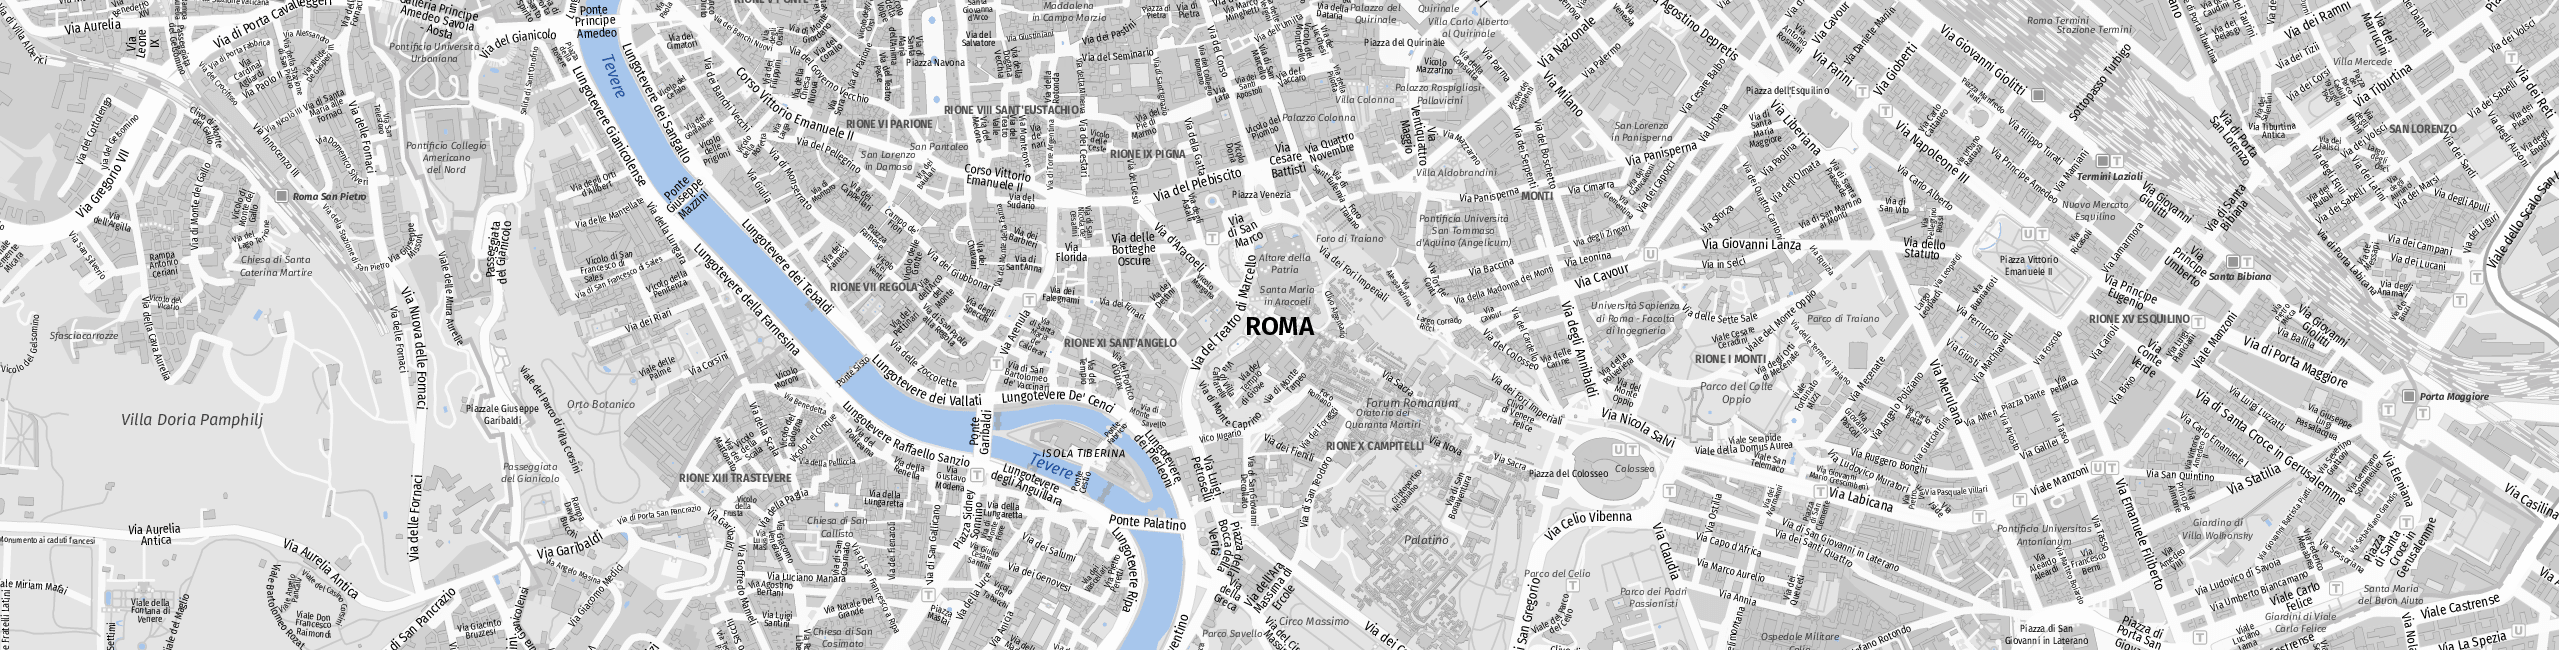 Stadtplan Roma zum Downloaden.